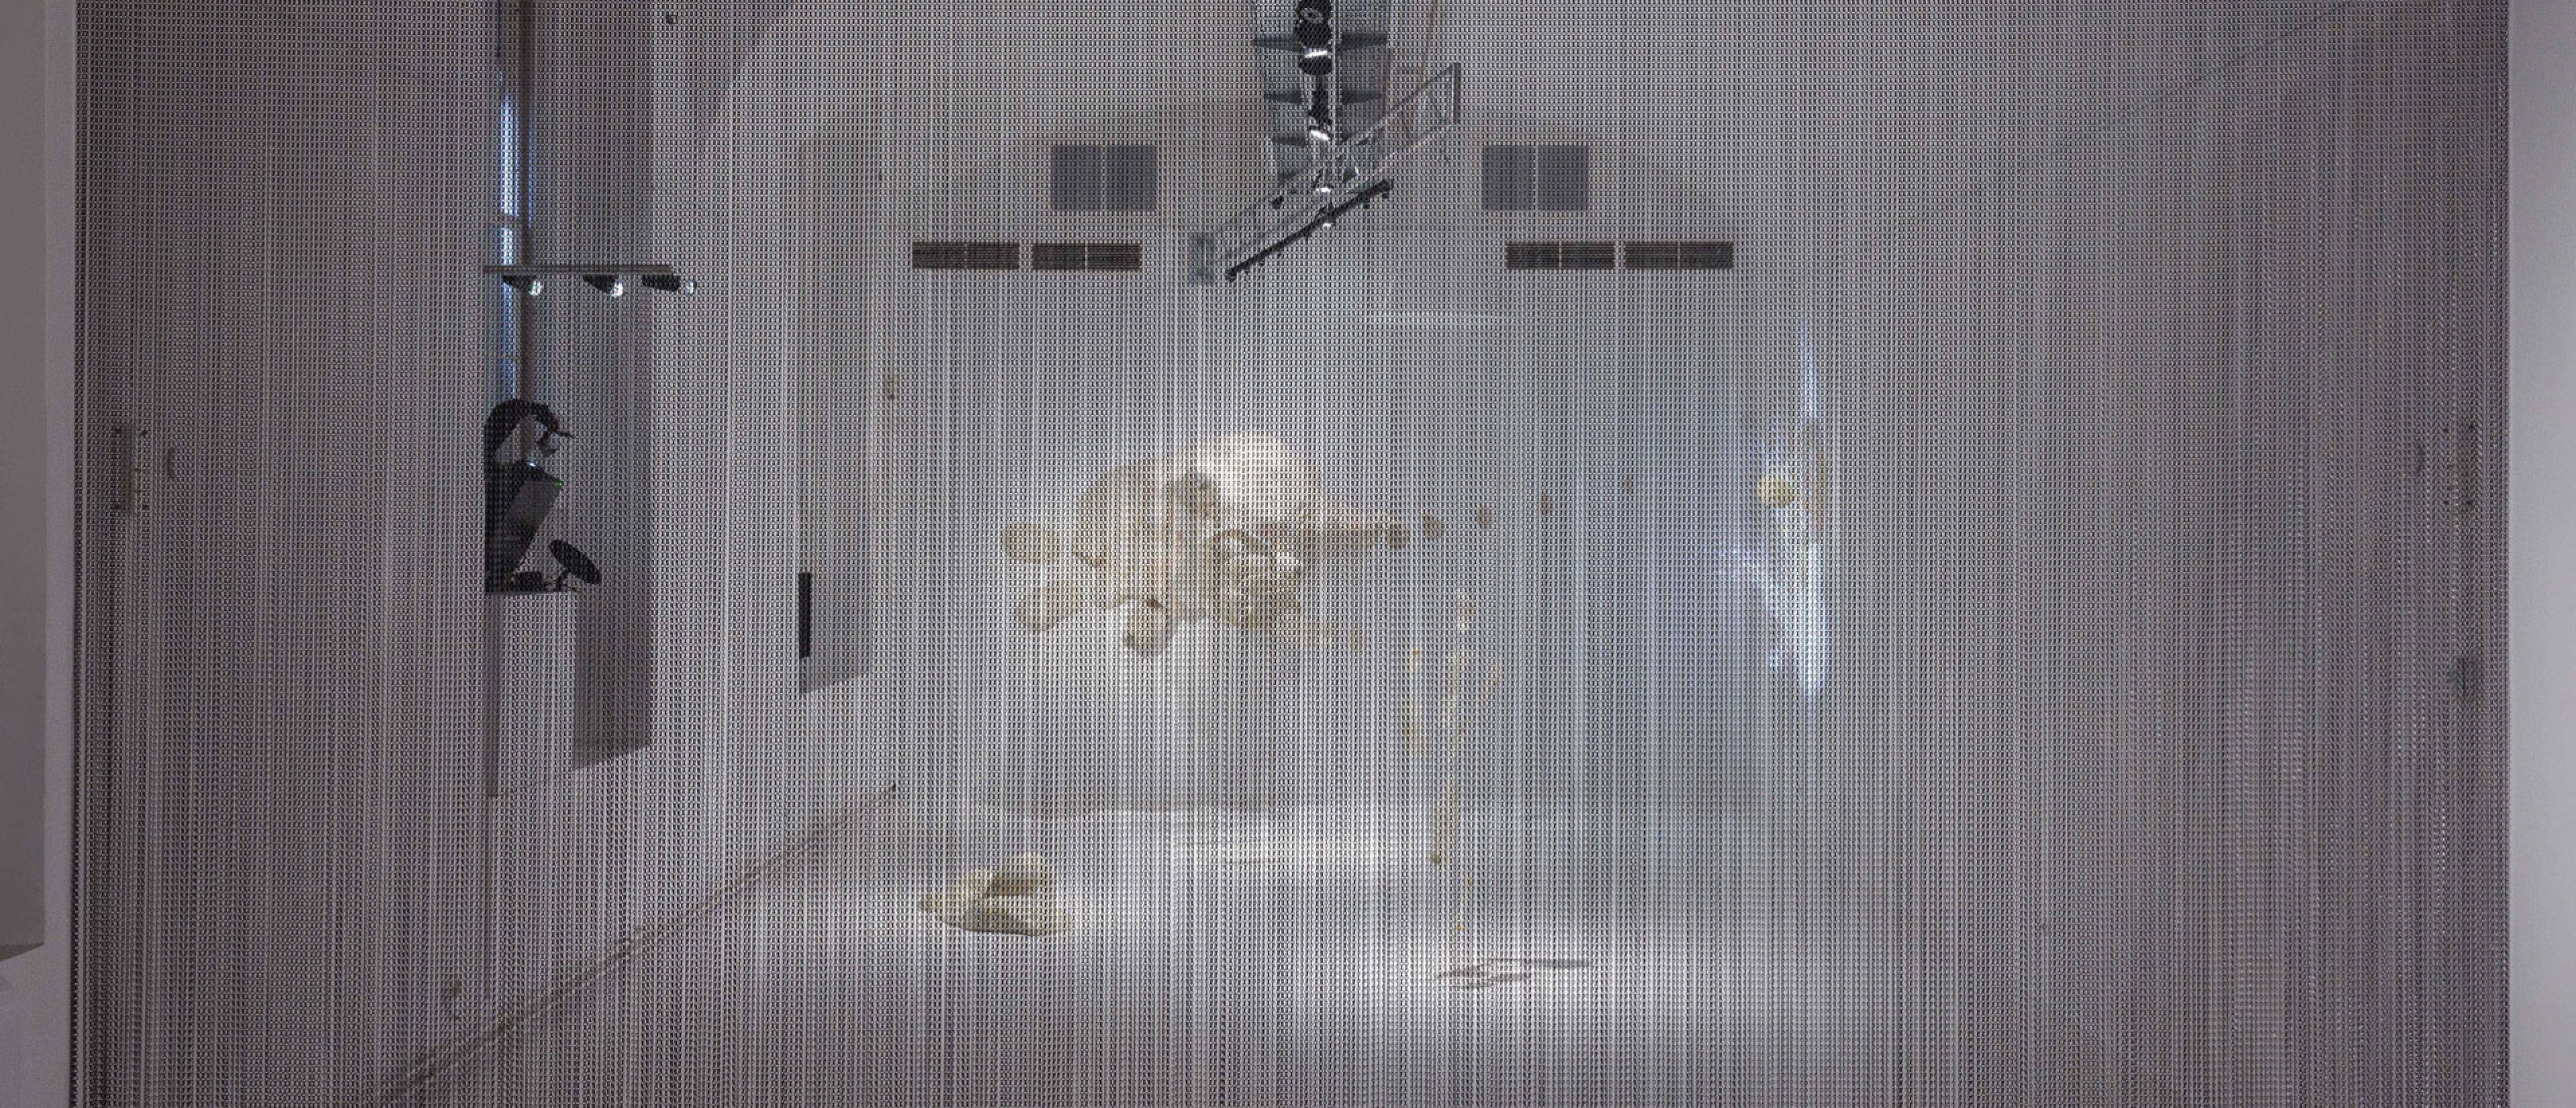 Ausstellungsraum frontal fotografiert, abgetrennt durch einen grauen Vorhang. Dahinter aufgestellt, hängend und an der Wand: 40.000-fachen Vergrößerung einer Amöbe